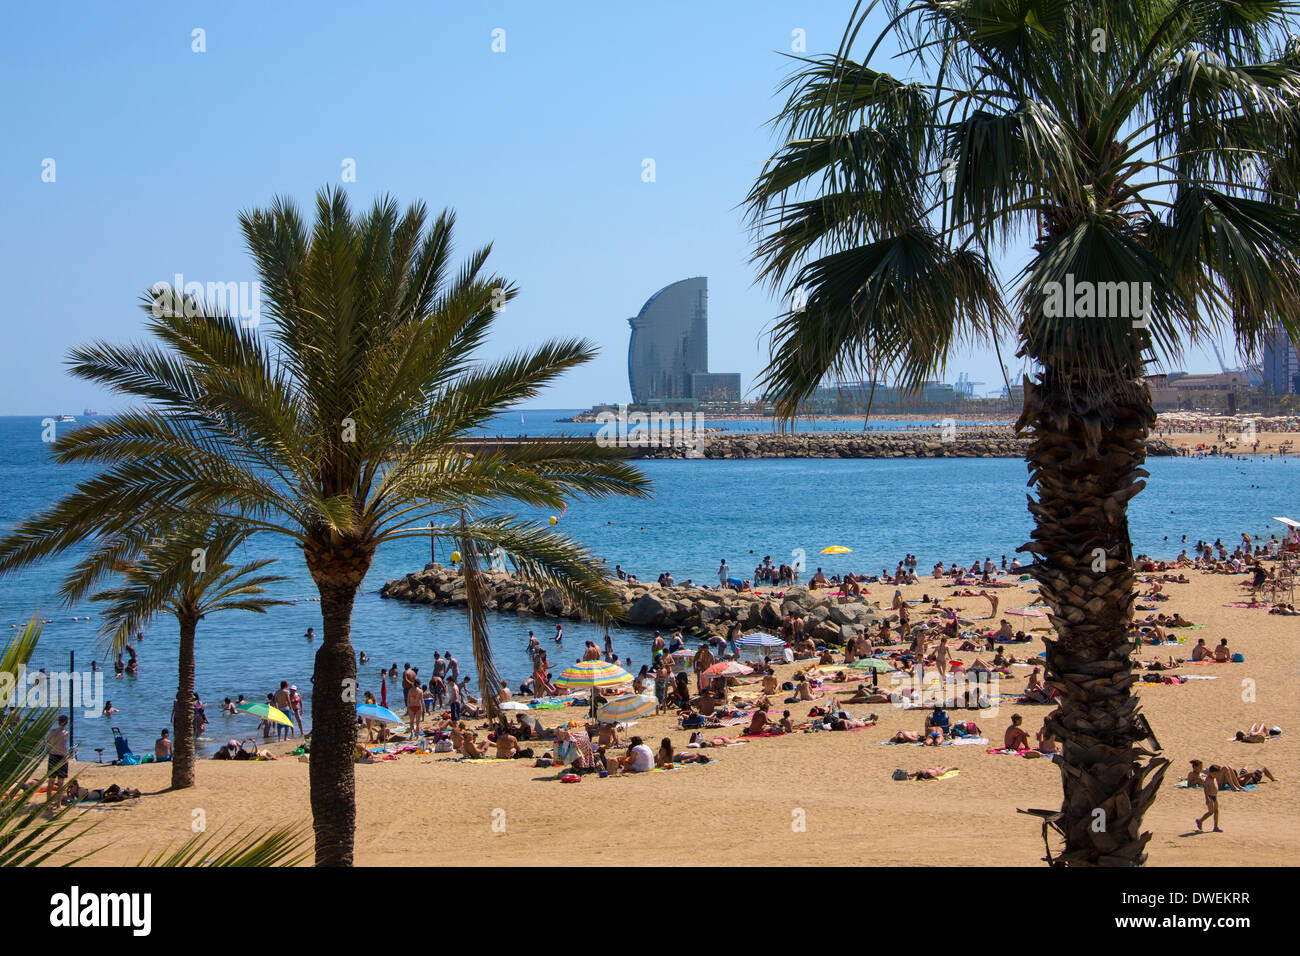 L'une des plages de Barcelone (Platja de la Nova Icaria) près du Port Olympique de Barcelone dans la région de Catalogne en Espagne. Banque D'Images